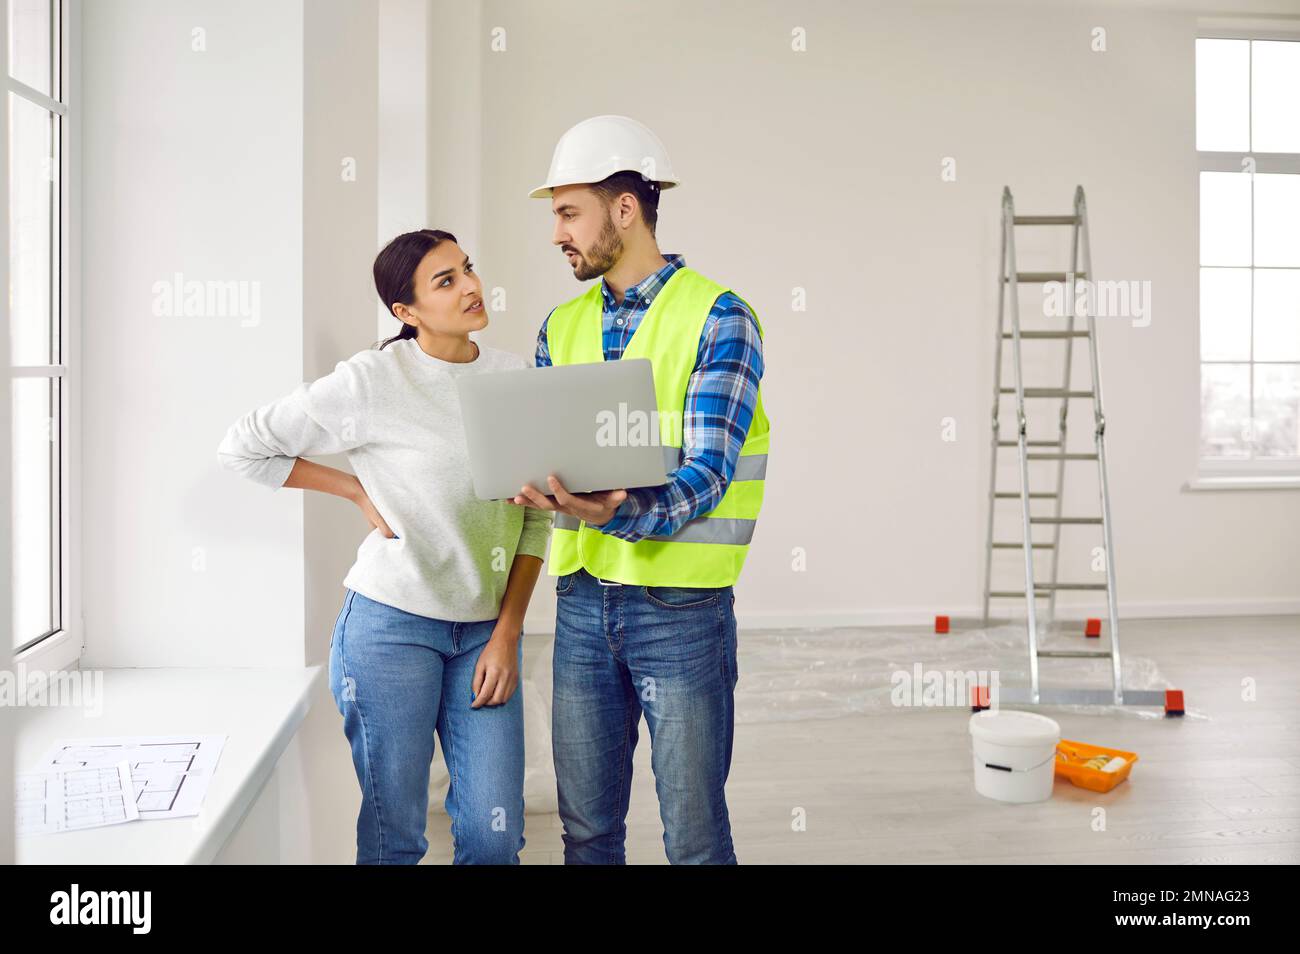 Eine attraktive junge Frau spricht mit einem Baumeister in einem weißen Helm, der im Wohnzimmer auf einem Laptop die Reihenfolge der Reparaturen vorführt. Stockfoto